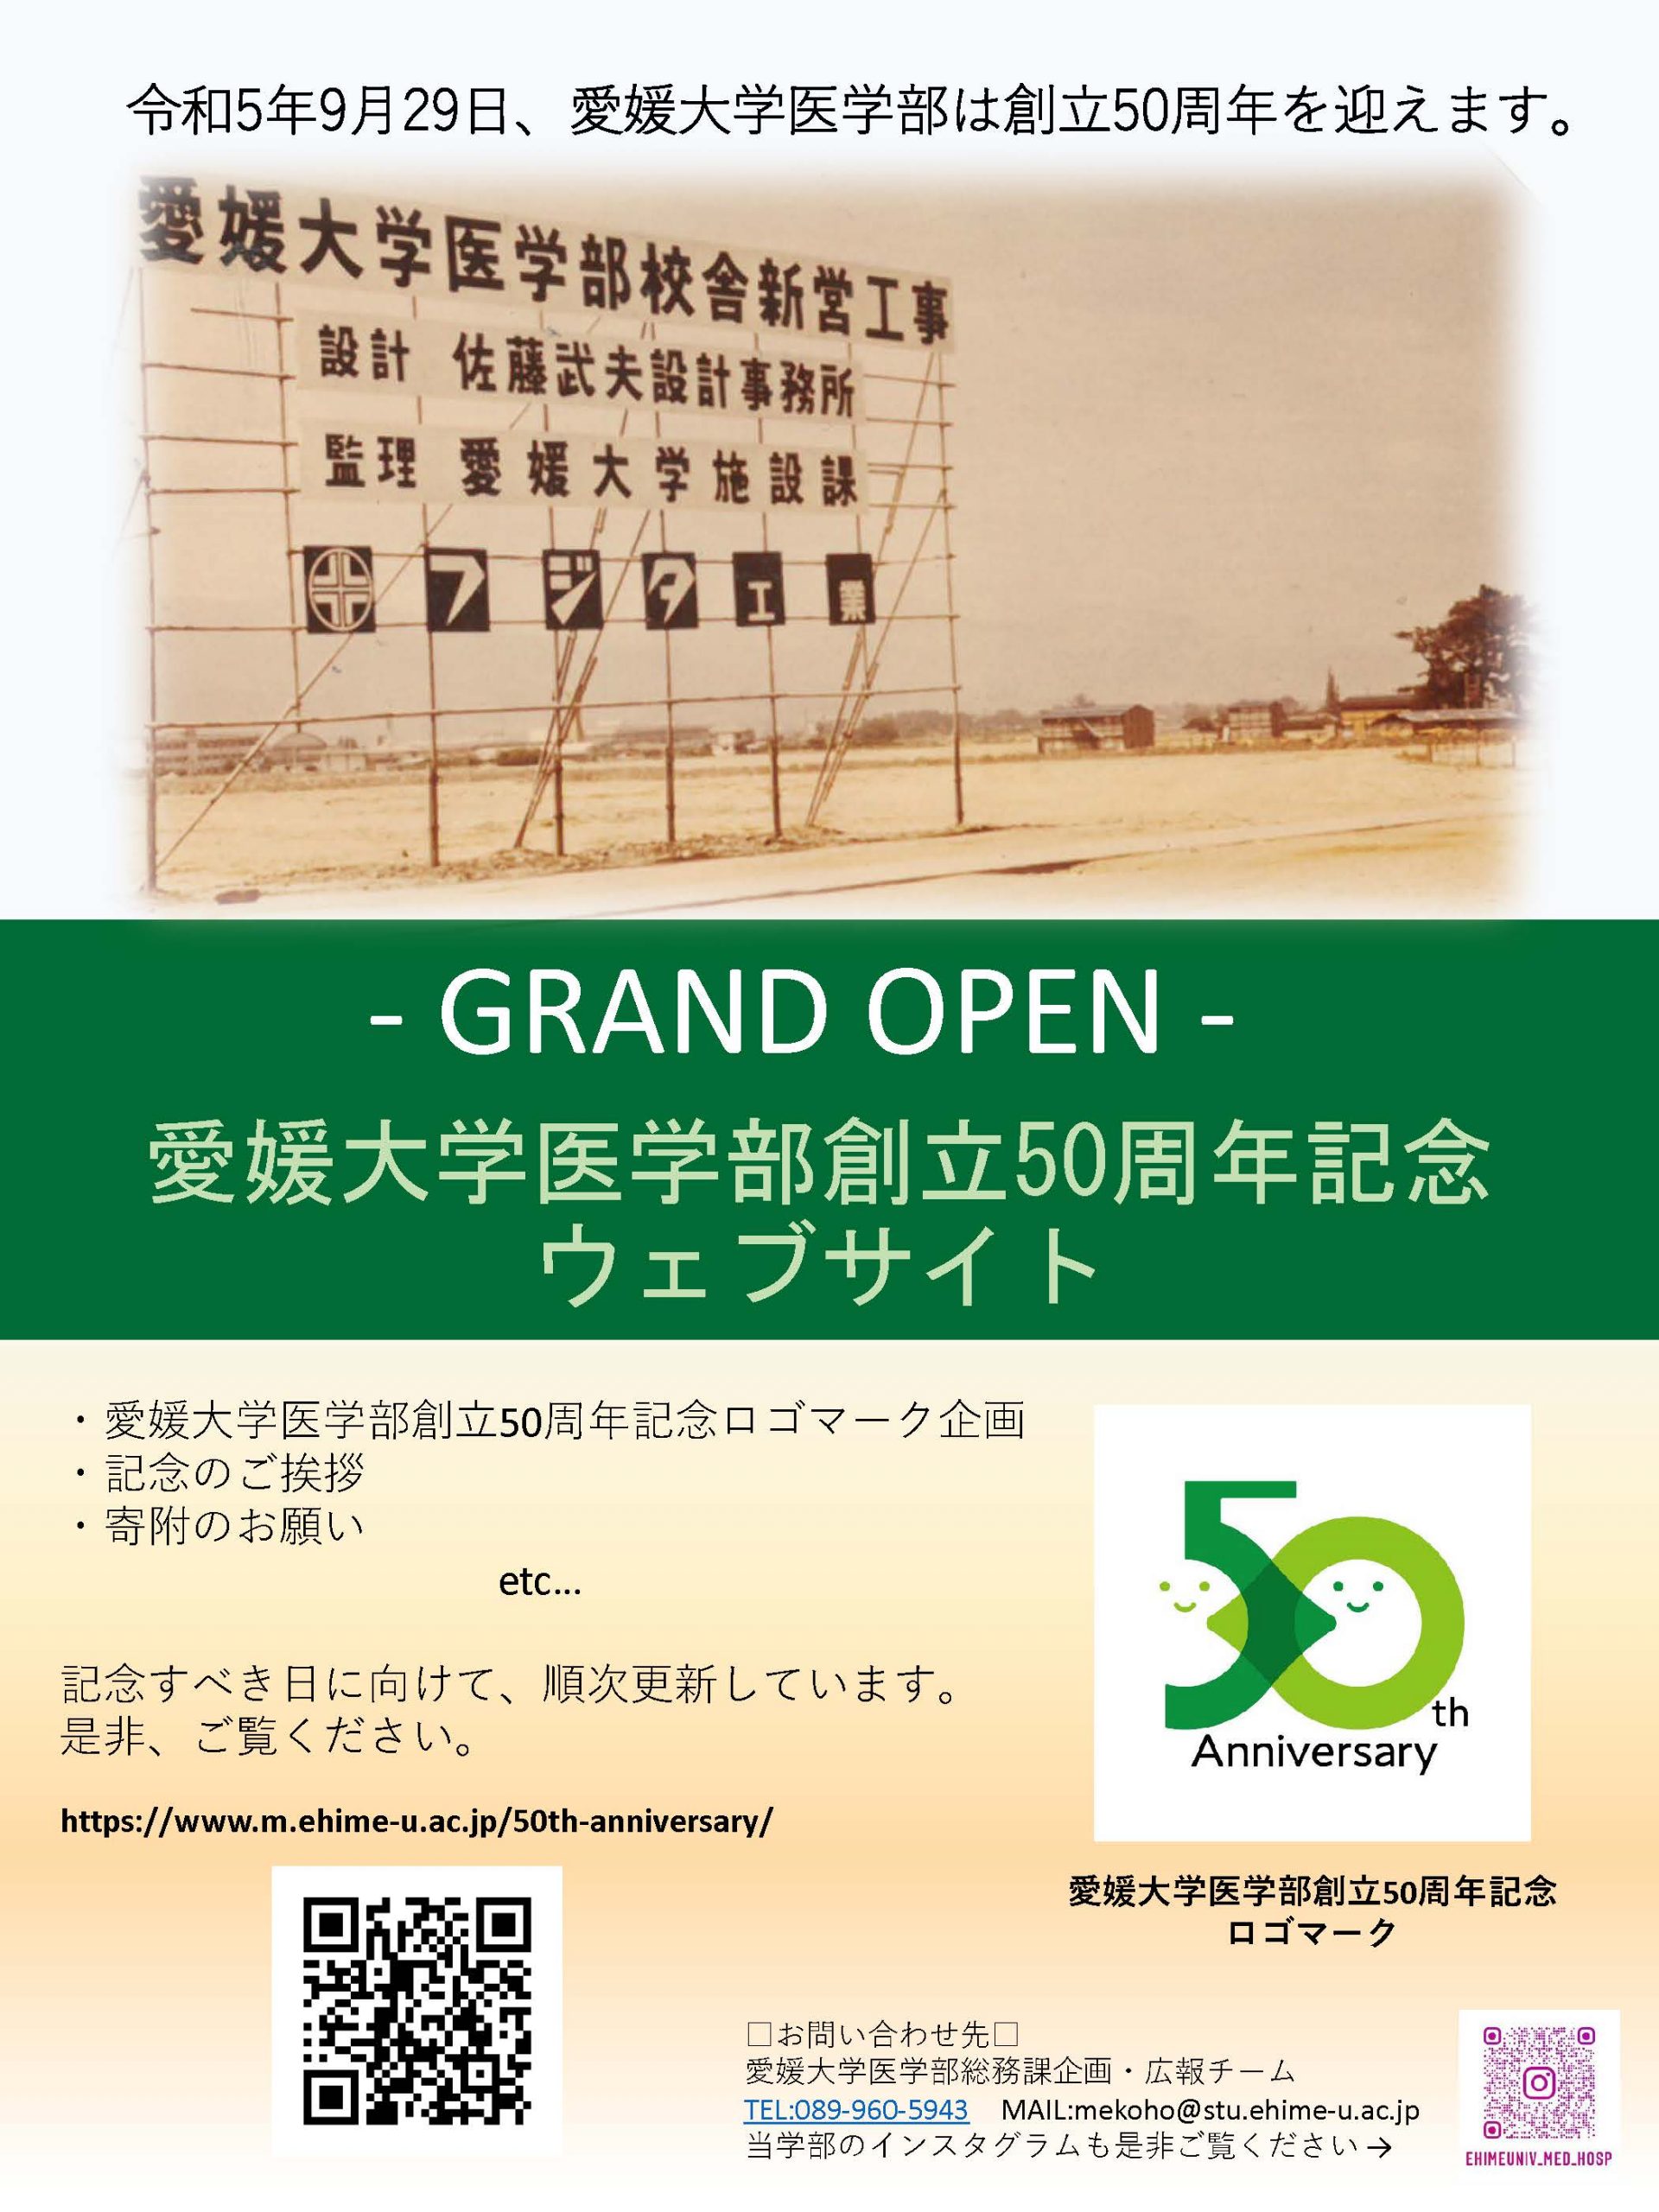 愛媛大学医学部創立50周年記念ウェブサイト開設のお知らせ